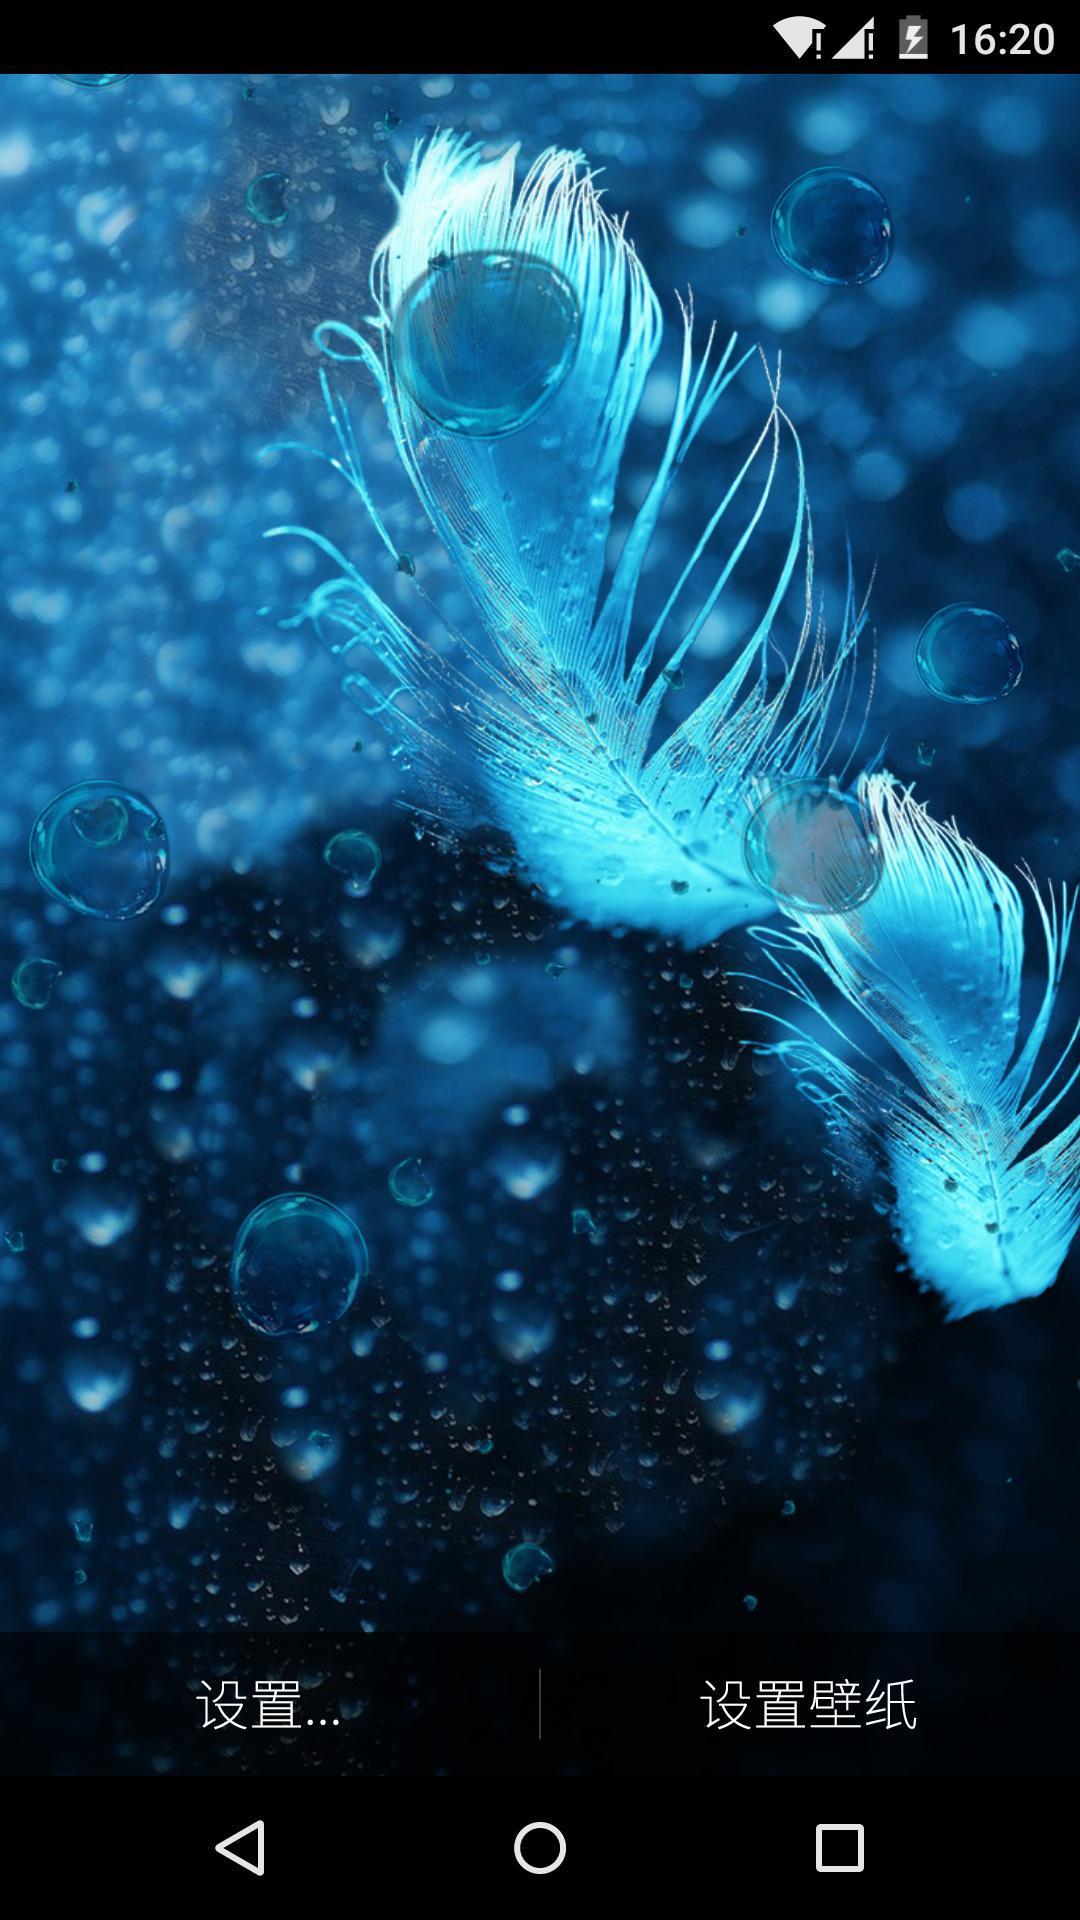 白色羽毛之水晶蓝气泡动态壁纸安卓下载 安卓版apk 免费下载